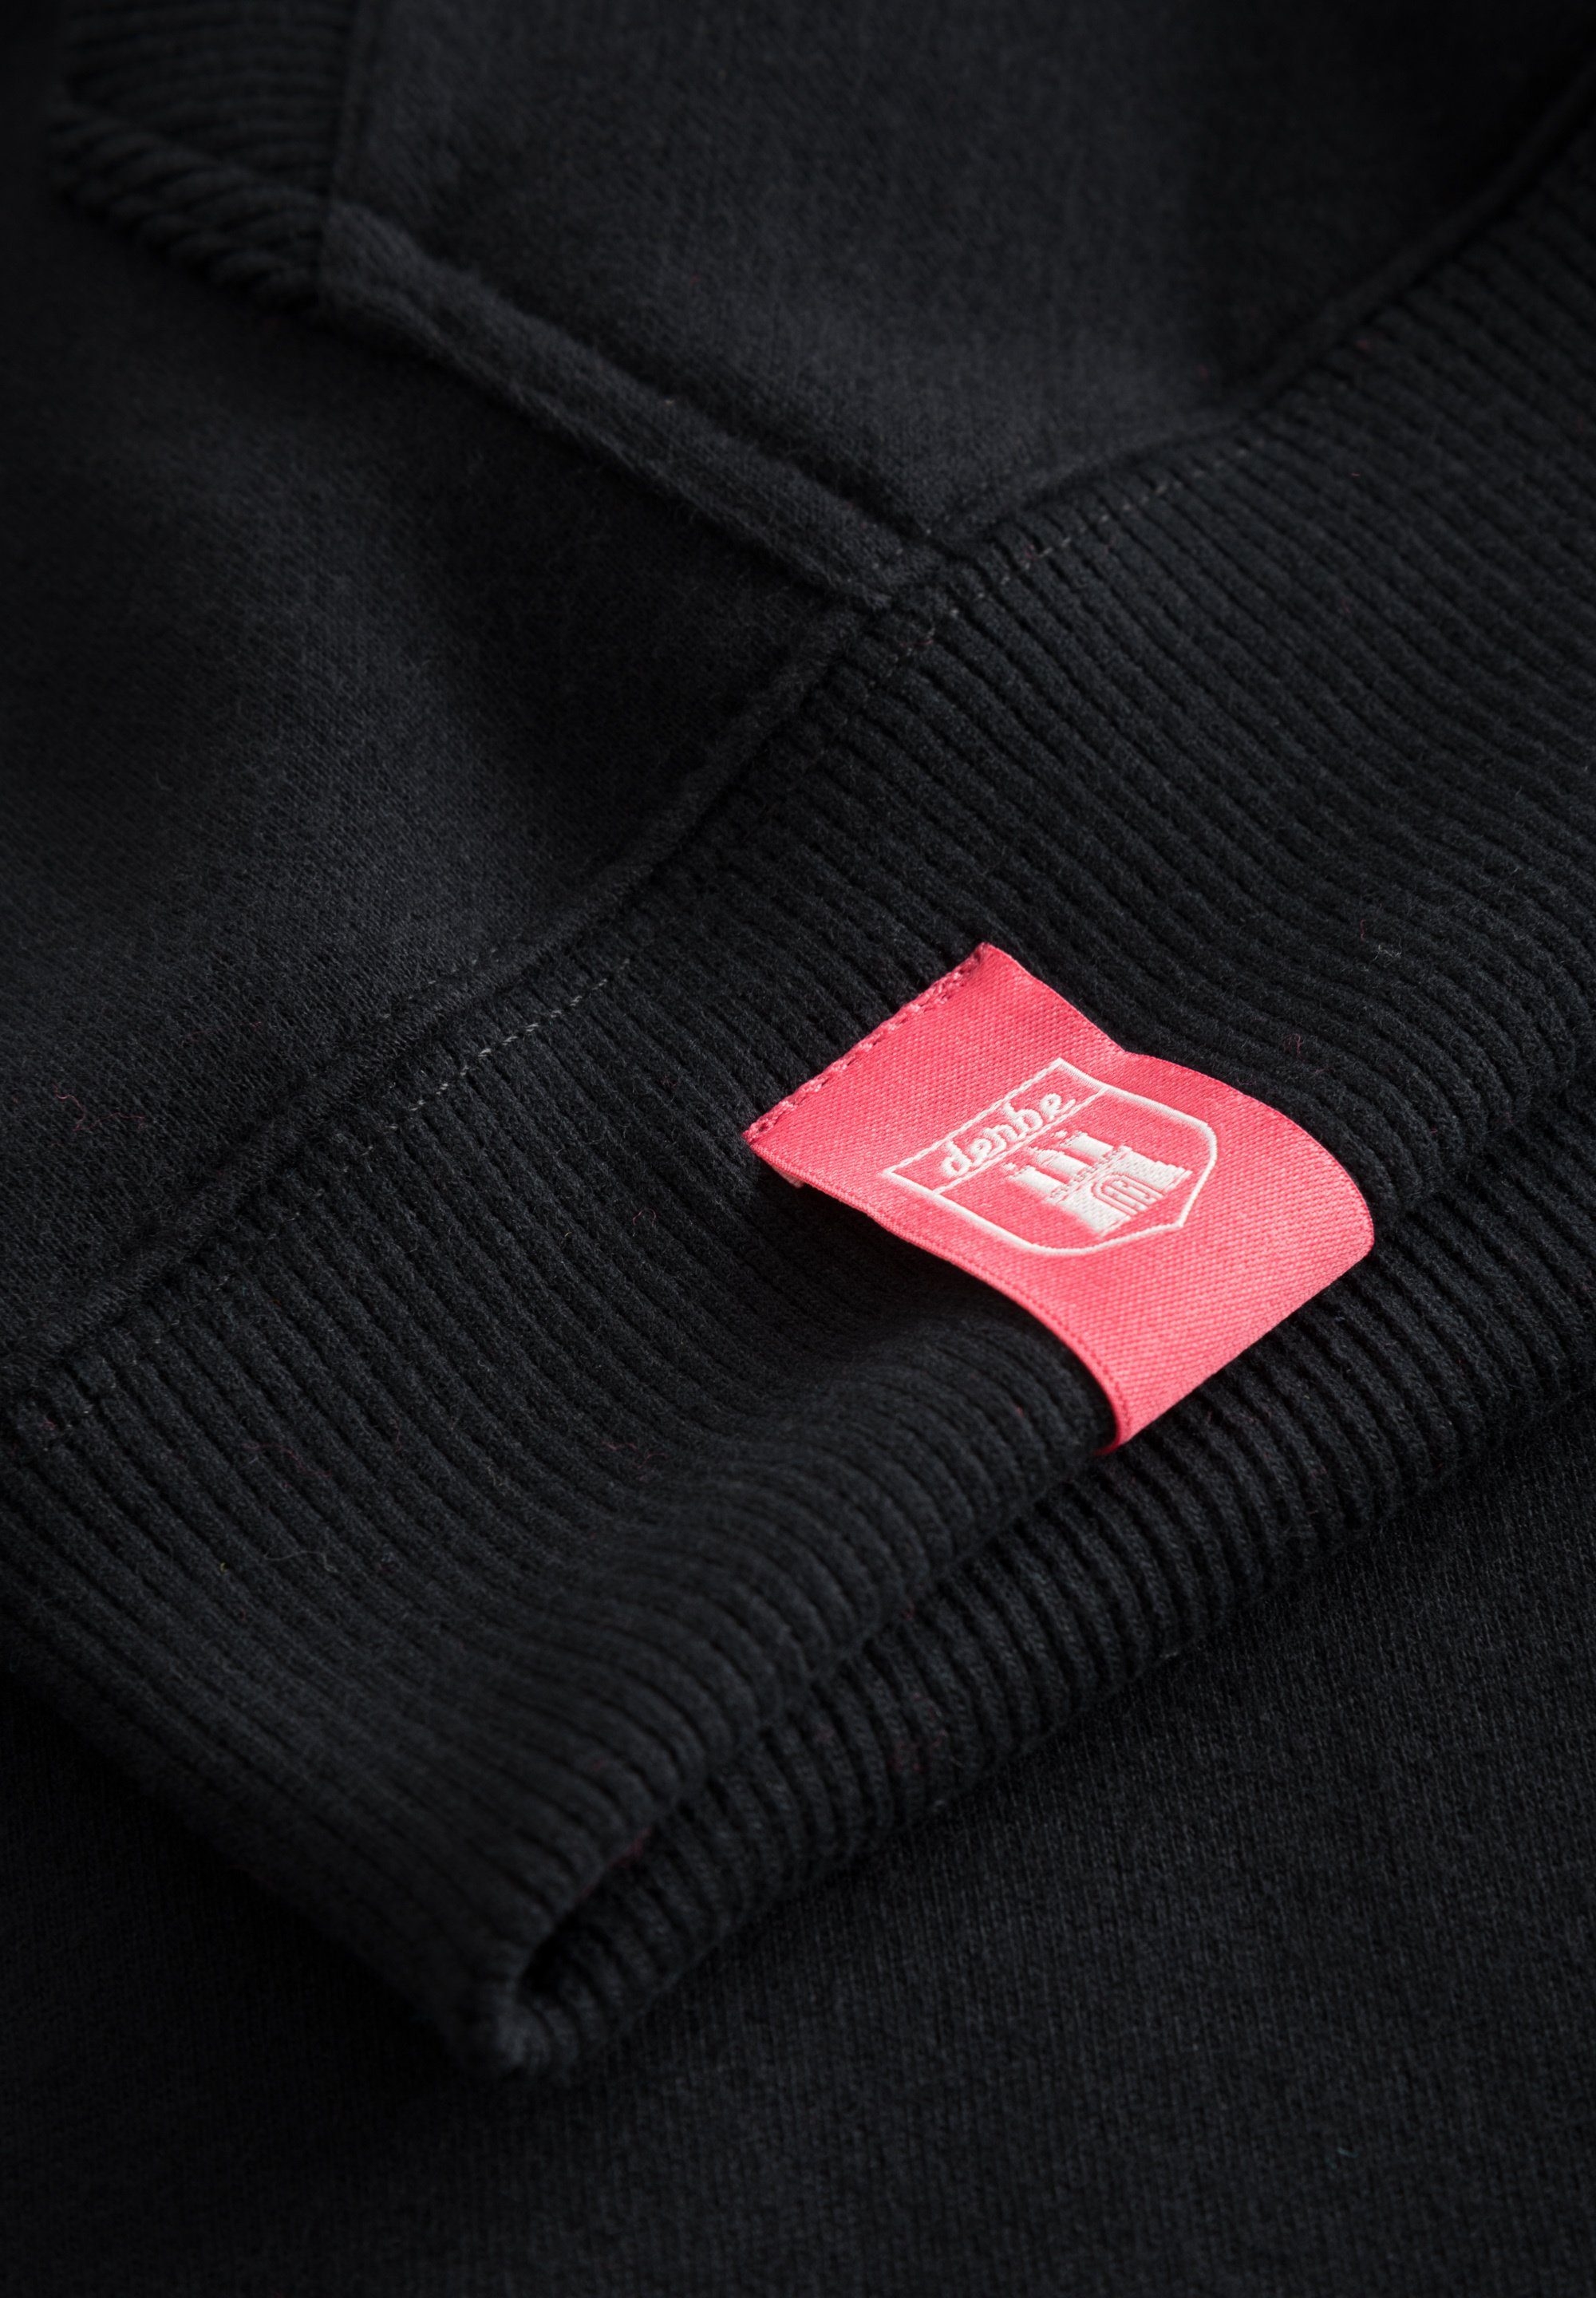 in weich, Sweatshirt Super MOIN Derbe schwarz Portugal Made